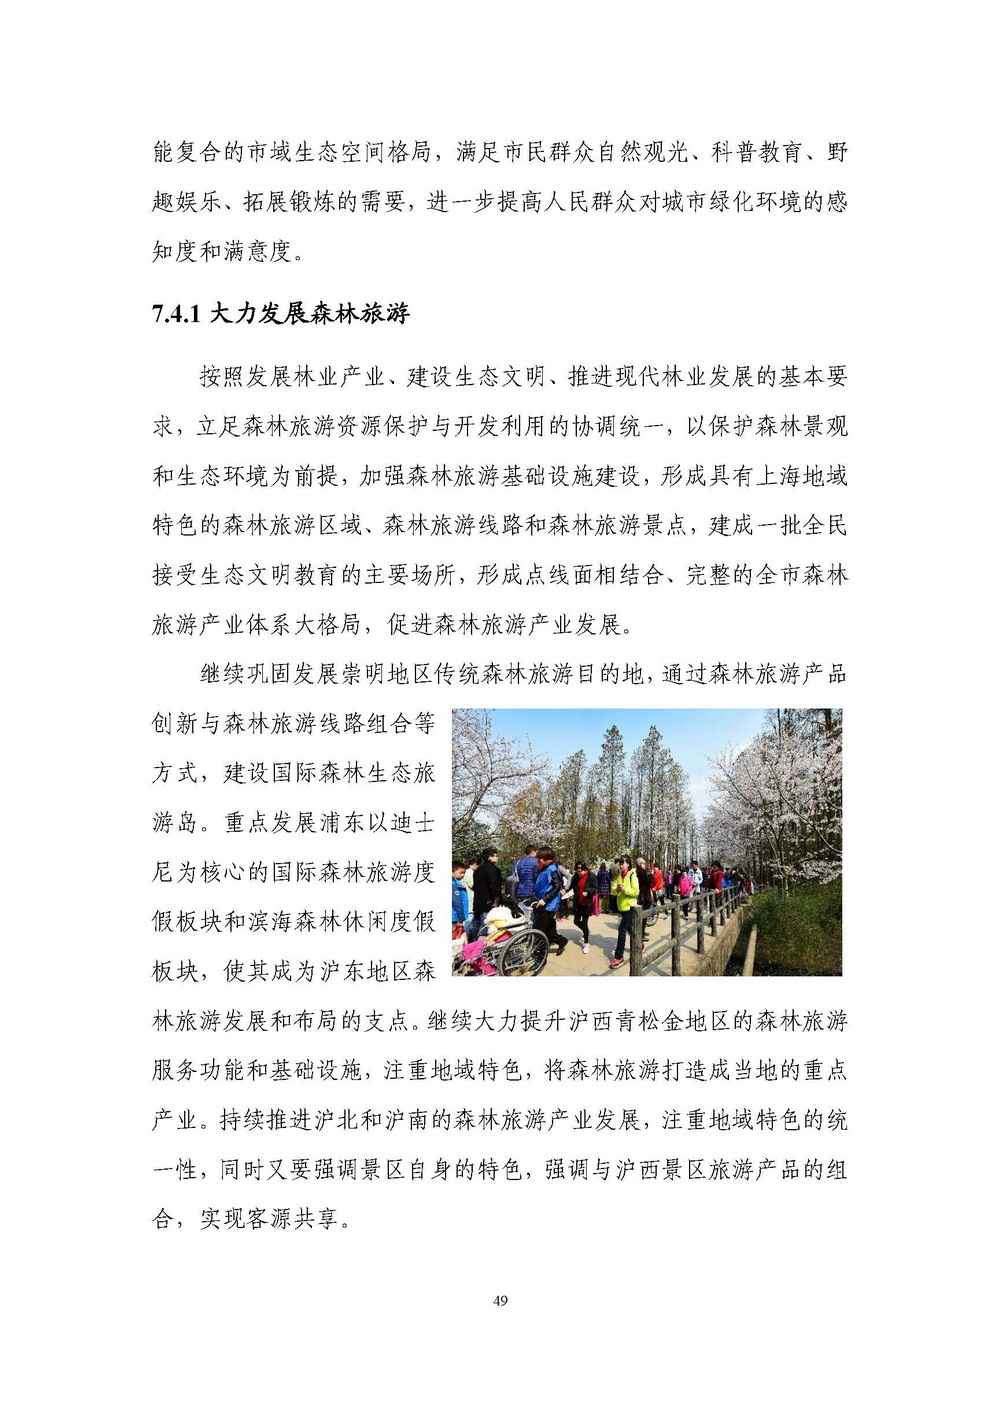 上海市森林和林地保护利用规划文本 公开稿 附图_页面_52.jpg